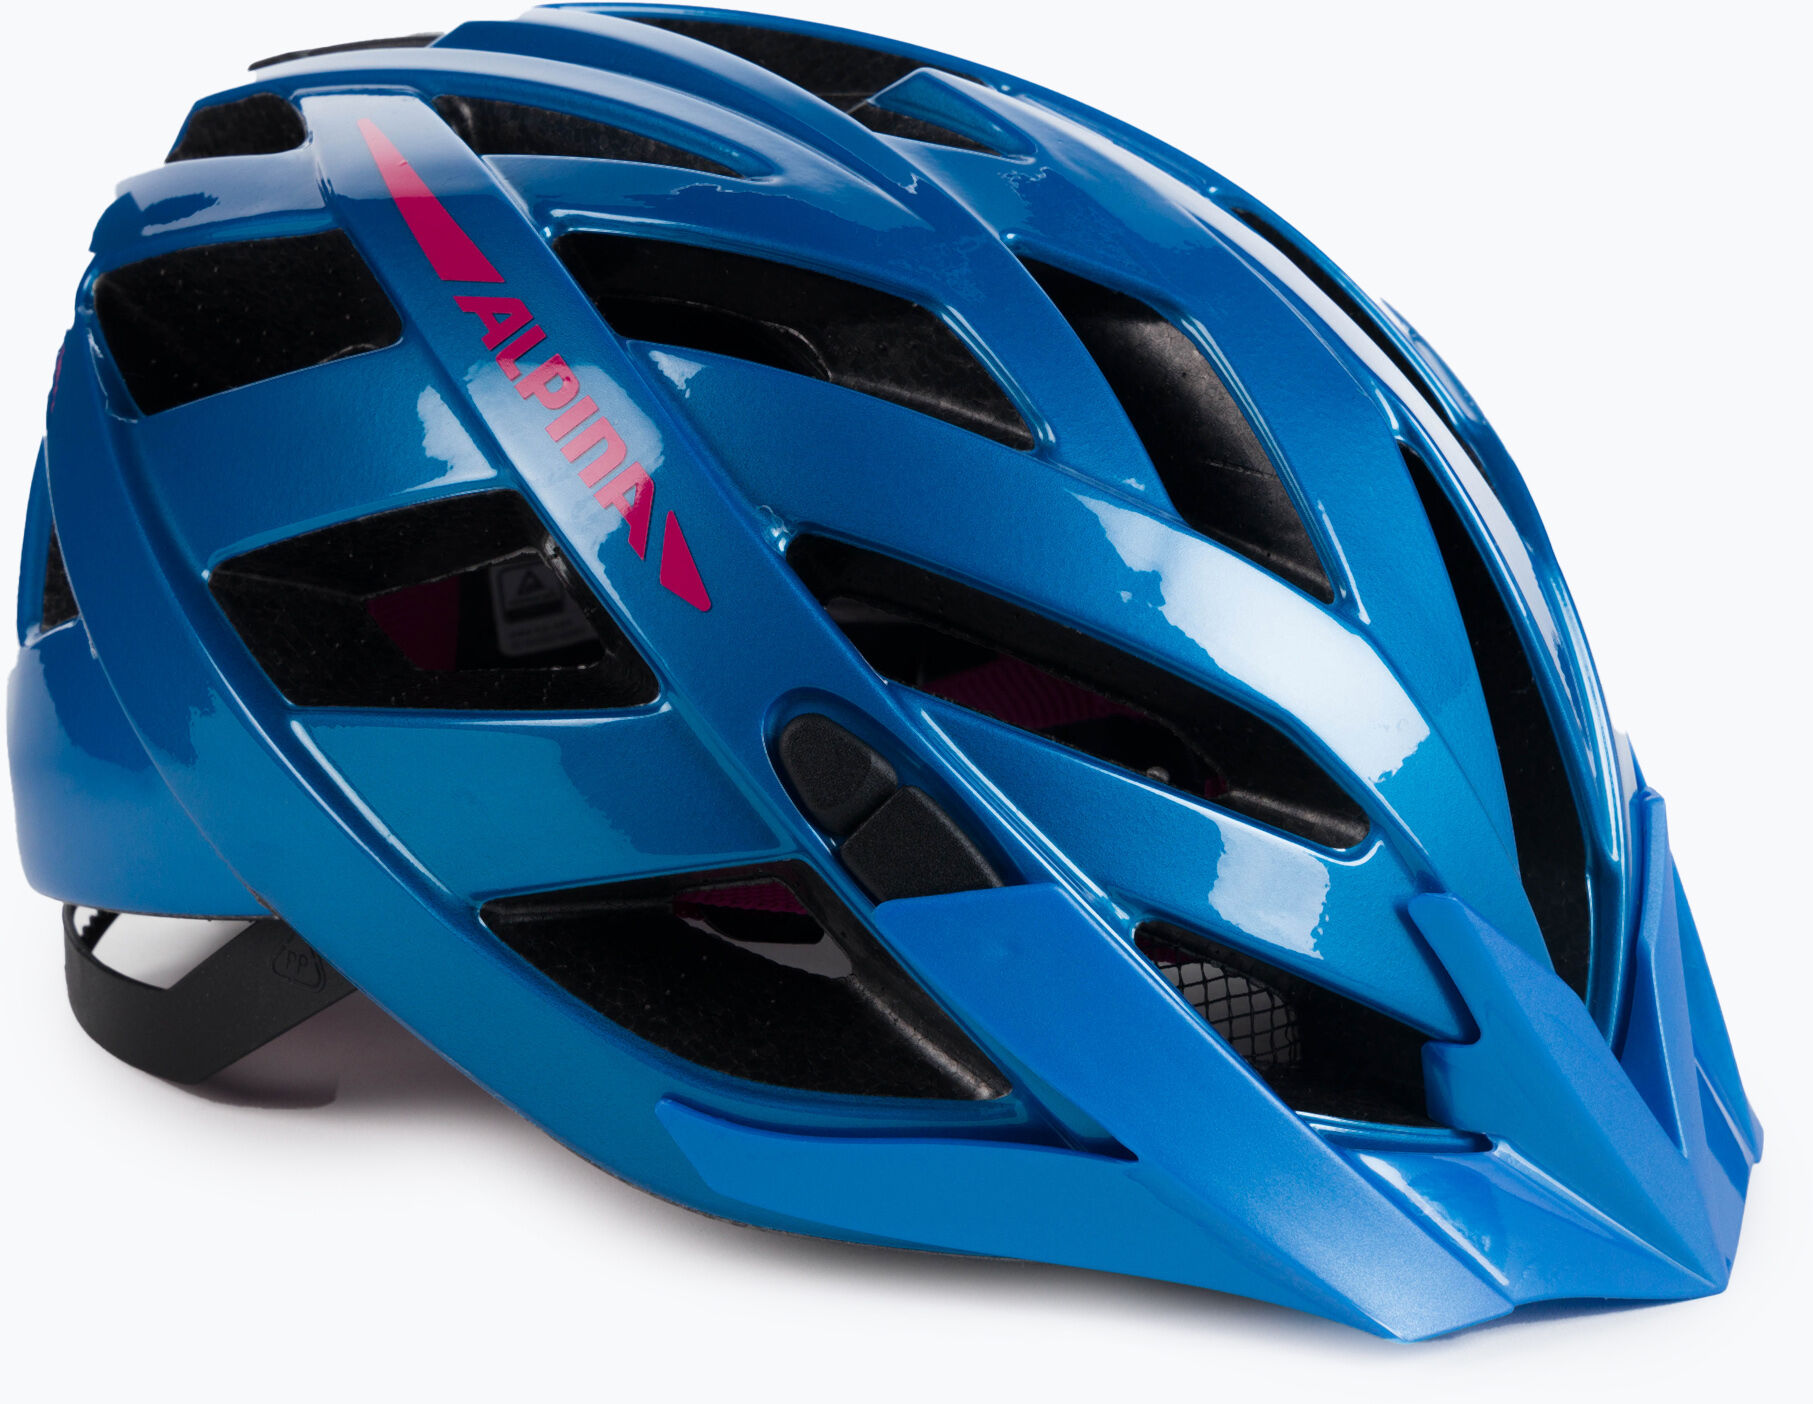 Kask rowerowy Alpina Panoma 2.0 true blue/pink gloss WYSYŁKA W 24H 30 DNI NA ZWROT